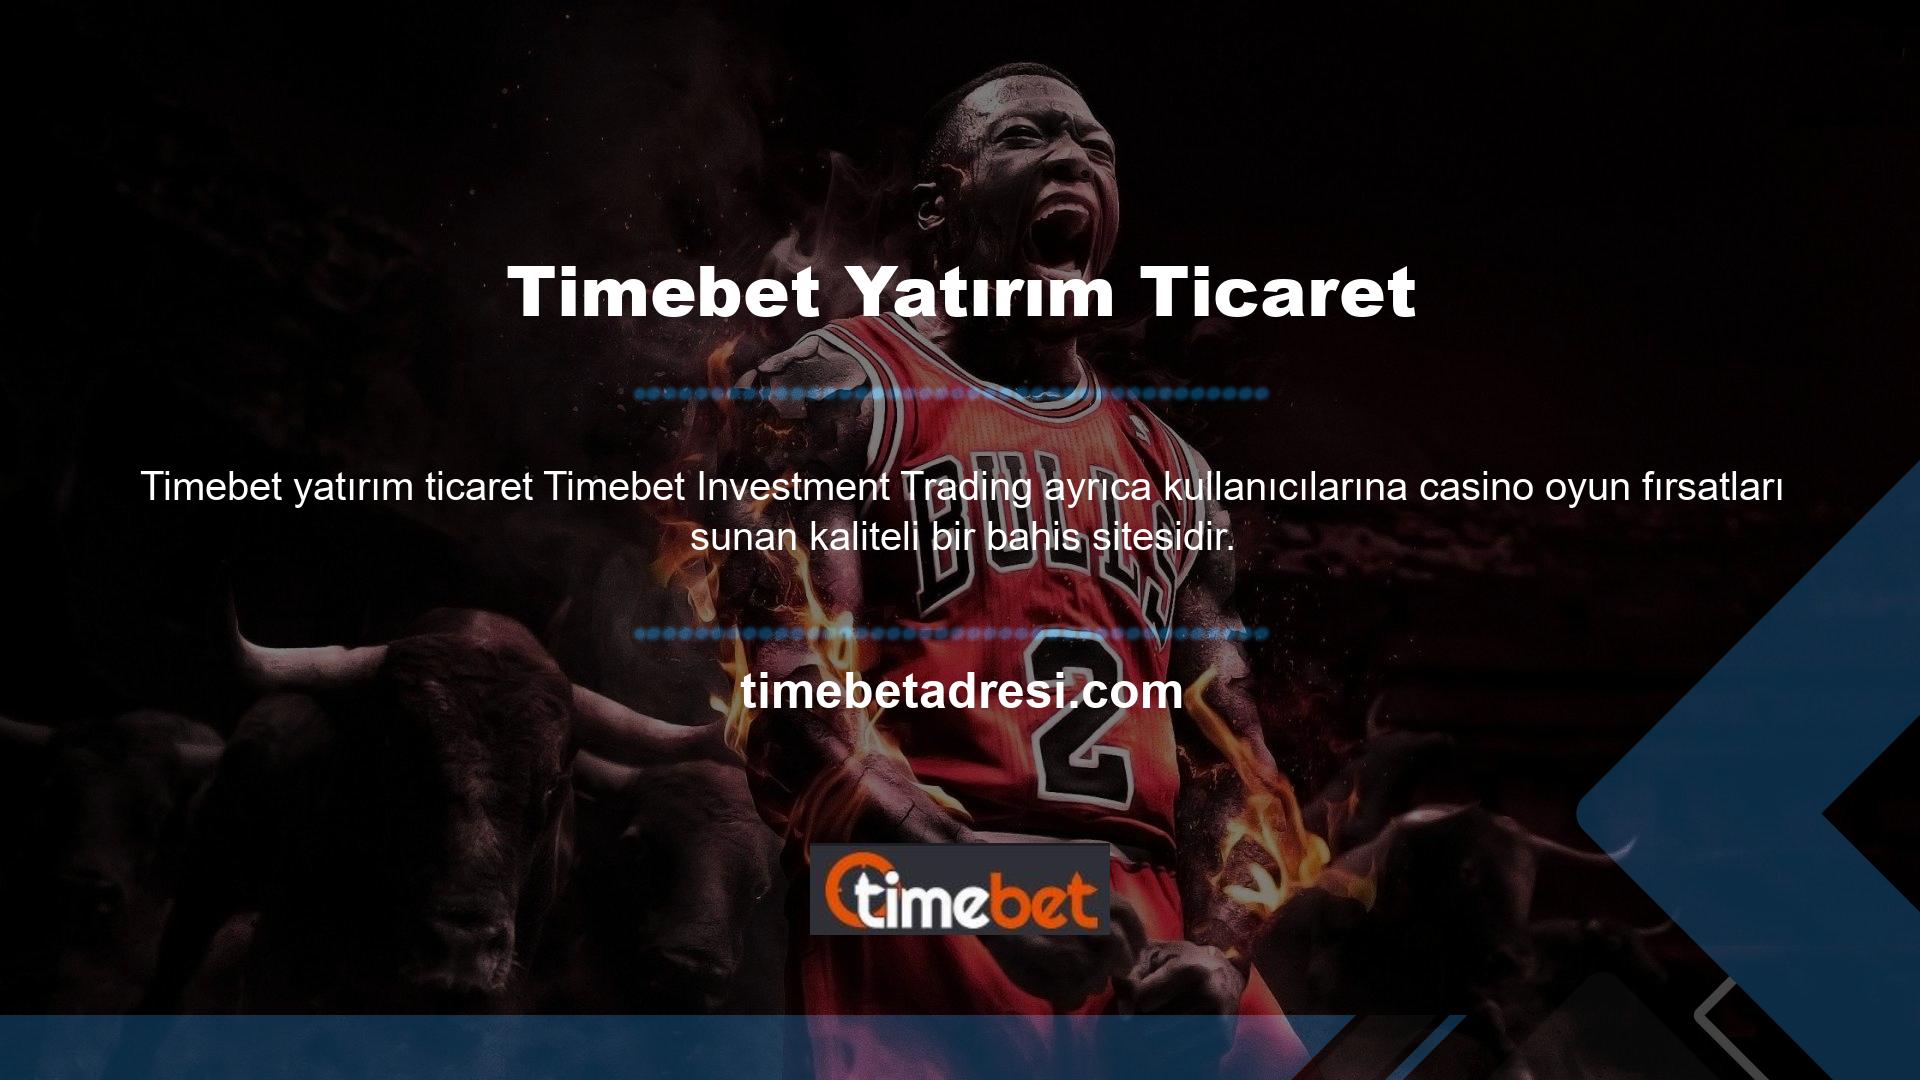 Pek çok olumlu yorum alan Timebet, kullanıcılara ödeme garantisi sunuyor